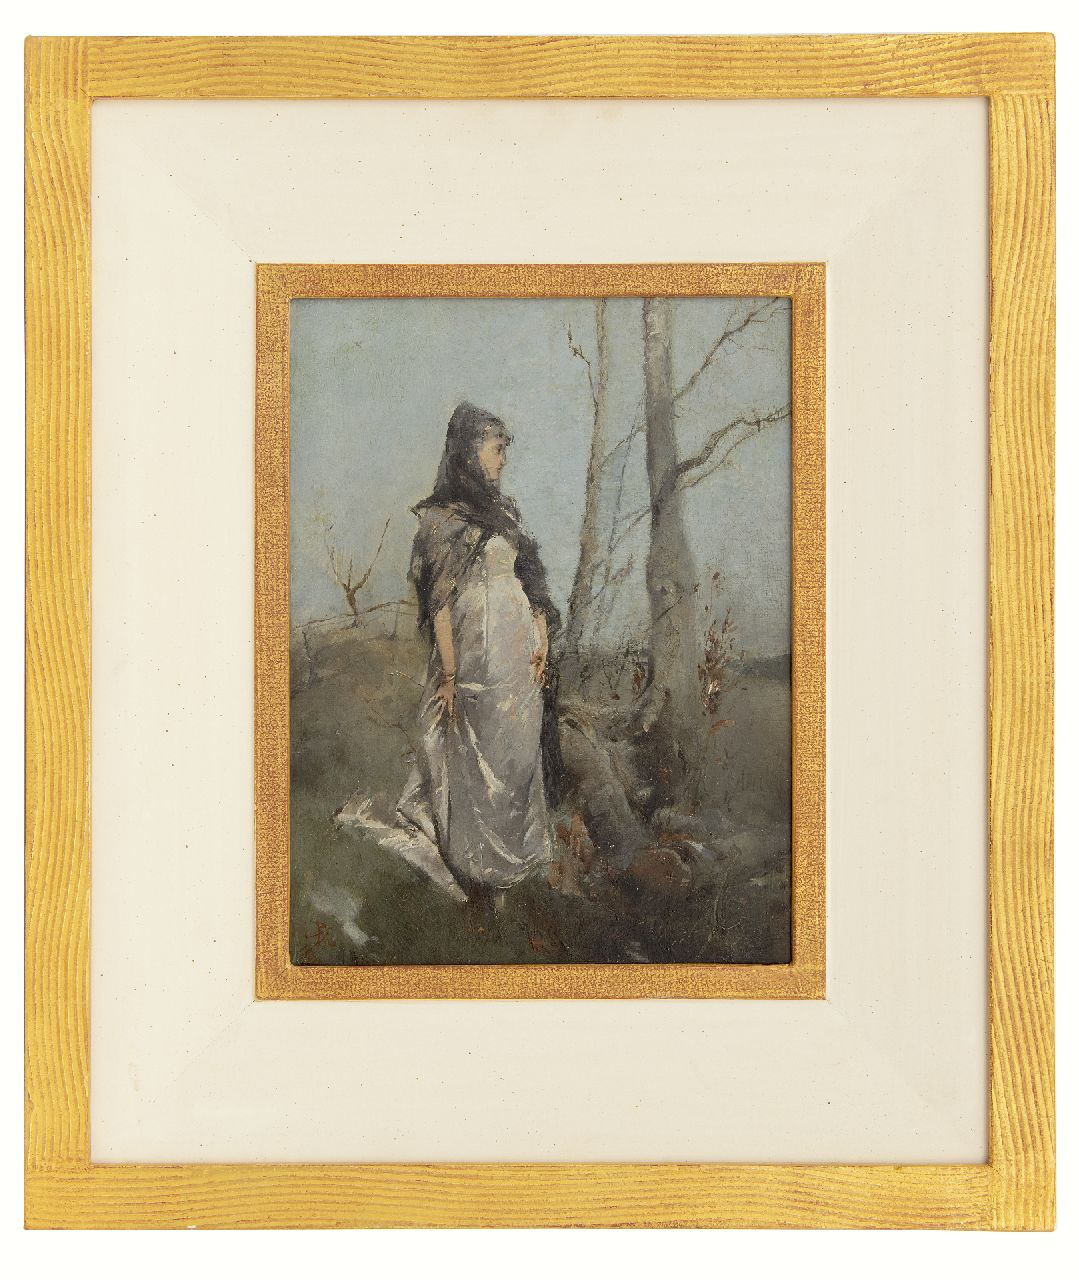 Haaxman P.A.  | Pieter Alardus Haaxman | Schilderijen te koop aangeboden | Vrouw in een landschap, olieverf op paneel 34,0 x 25,5 cm, gesigneerd linksonder met monogram en gedateerd 1879